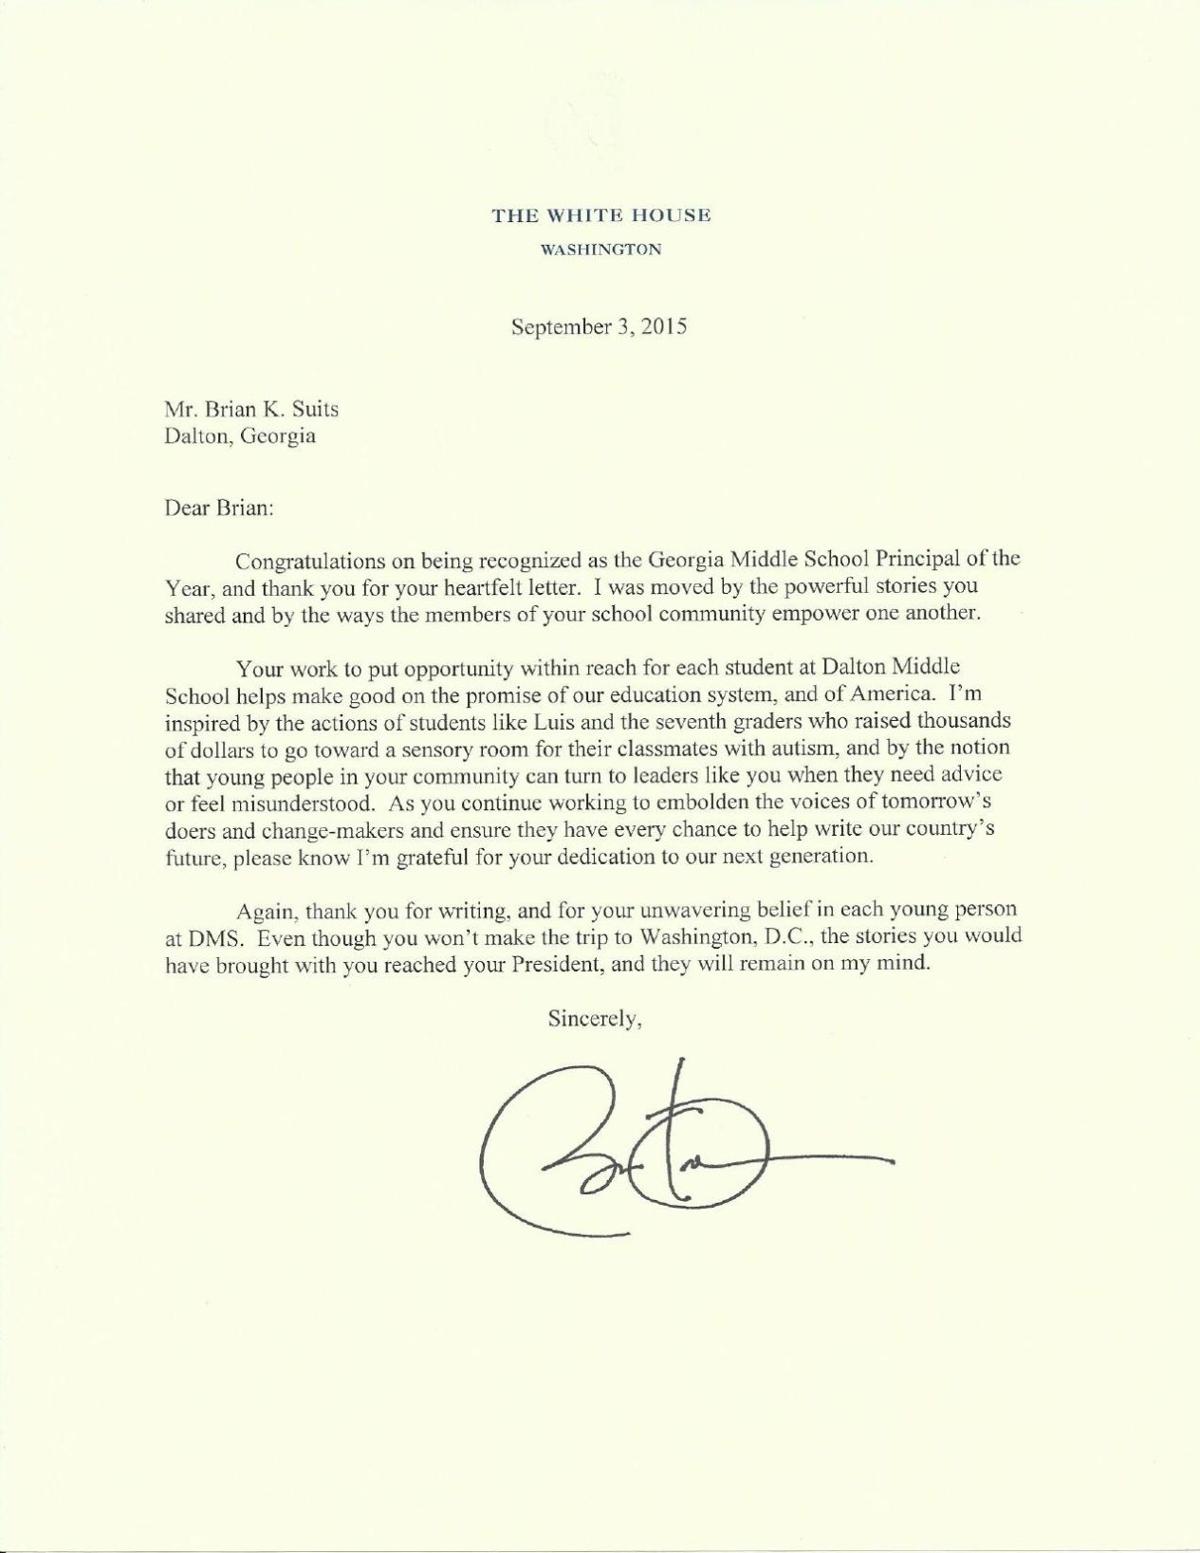 Barack Obama Letter